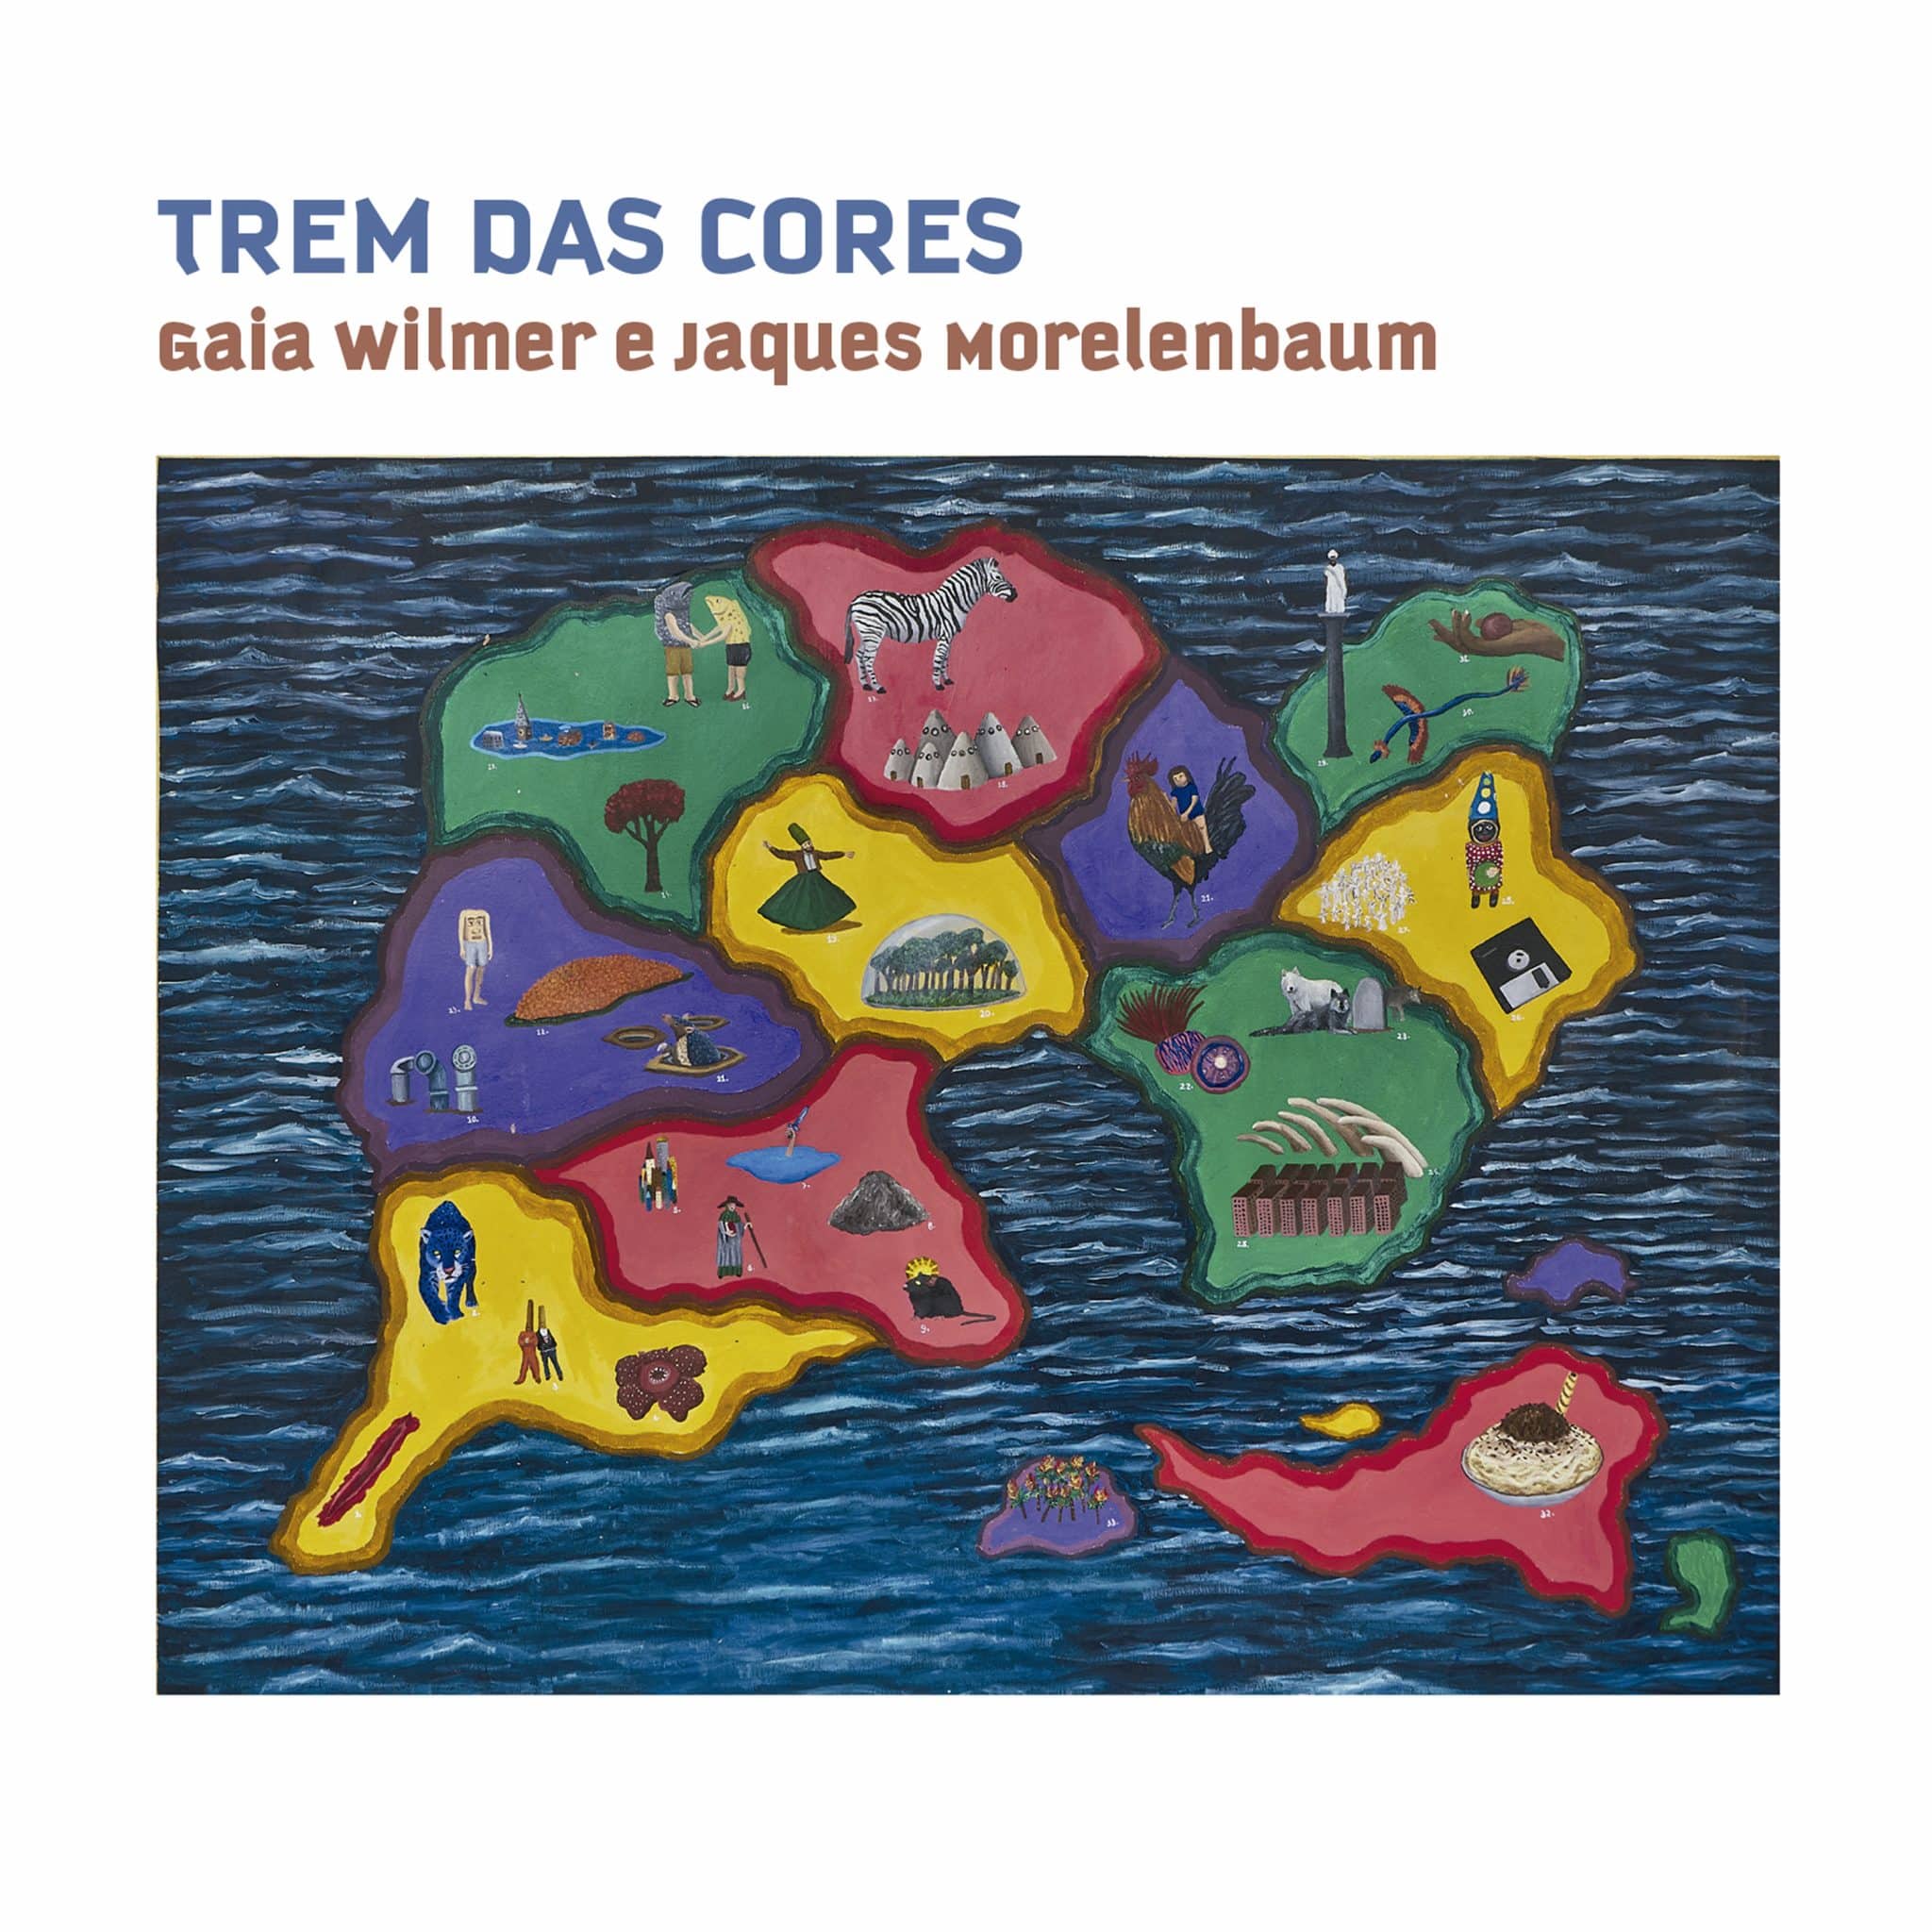 revistaprosaversoearte.com - Álbum 'Trem das Cores' de Gaia Wilmer e Jaques Morelenbaum, em homenagem Caetano Veloso